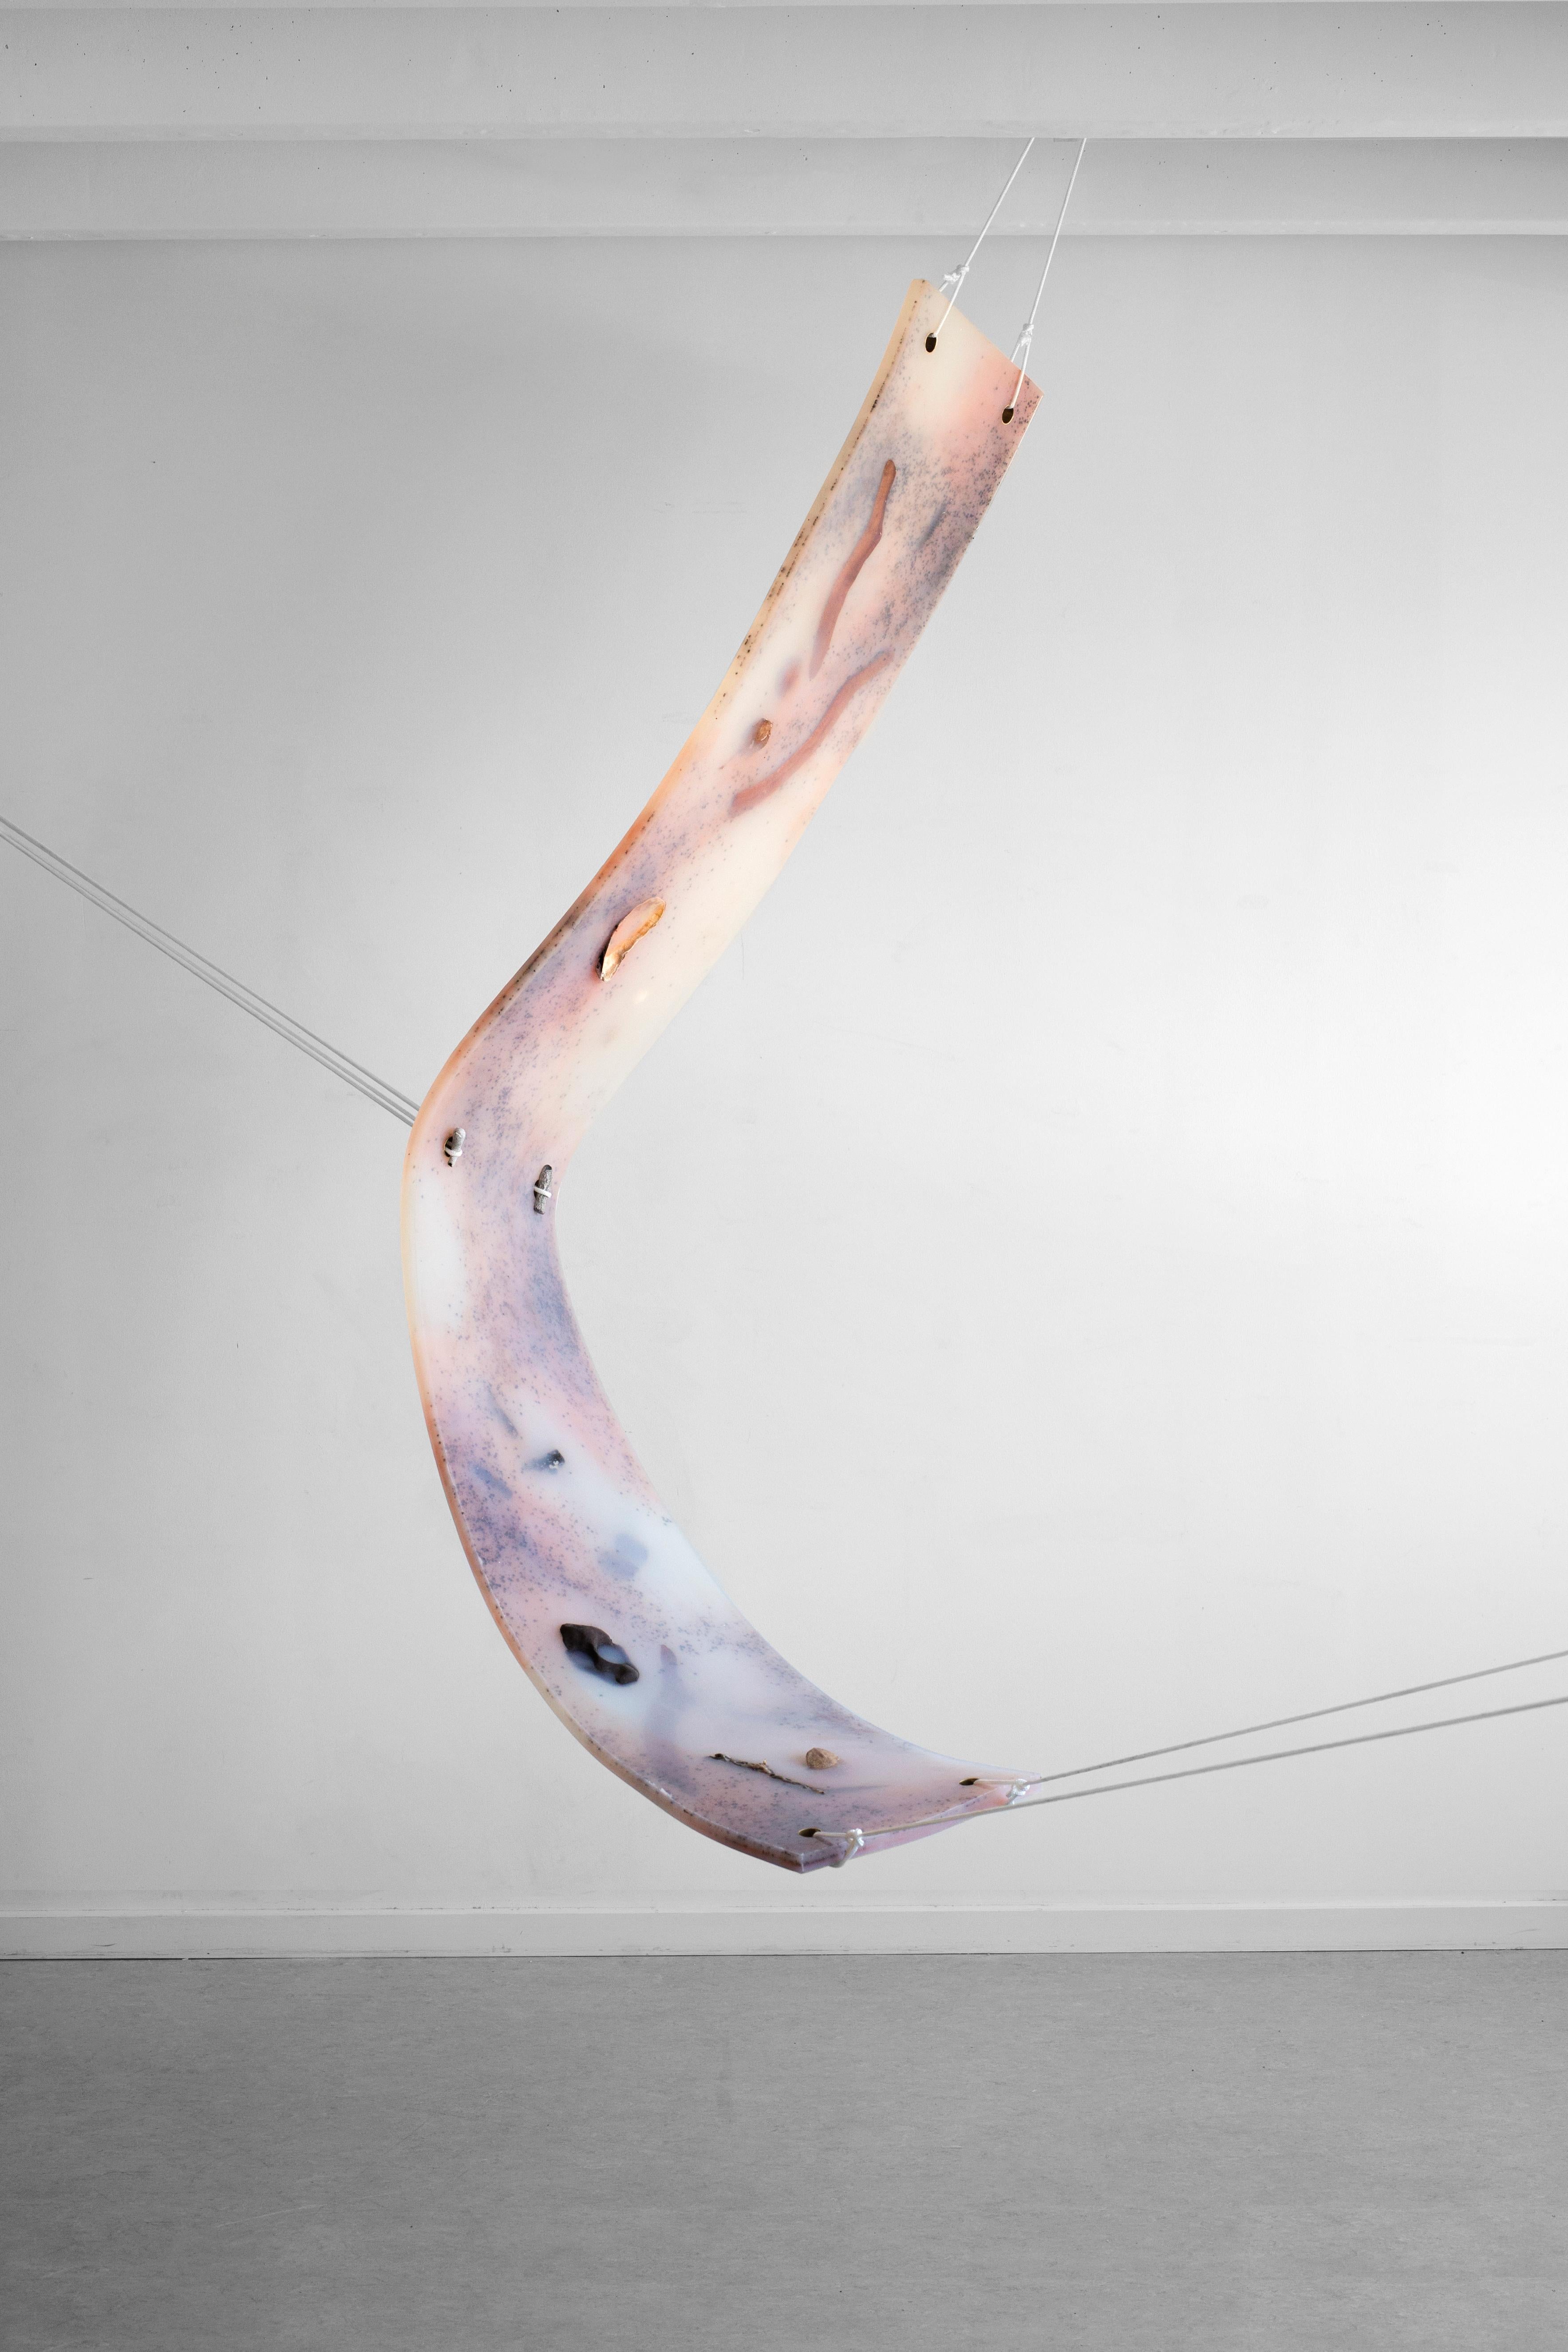 Einzigartige, handgefertigte Silikonskulptur mit LED-Lichtern und Sammelstücken aus der Natur von der schwedischen Künstlerin Hilda Hellström. Vielseitige Montagemöglichkeiten - kann entweder an der Wand oder mit Metallhaken an der Decke aufgehängt